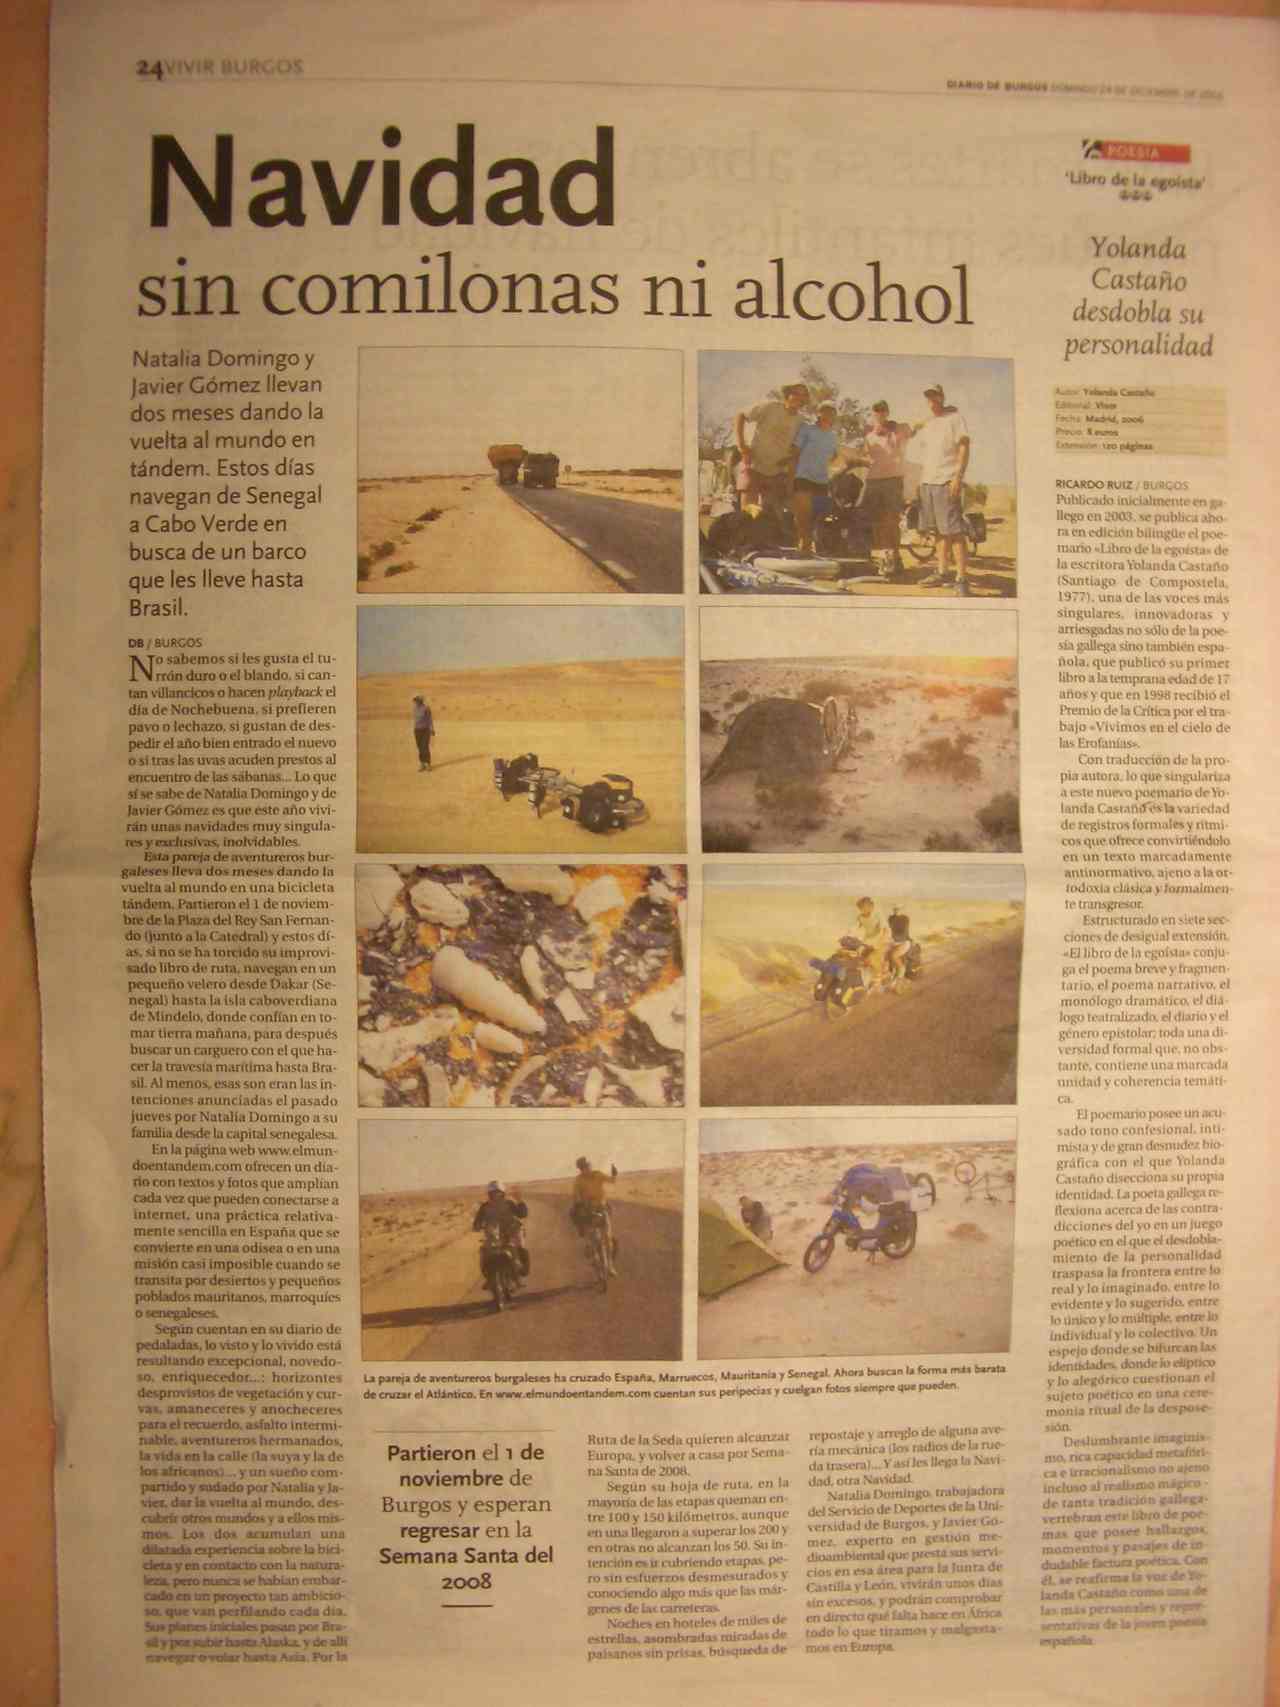 Diario de Burgos am 24.12.2006: 
Navidad sin comilonas ni alcohol